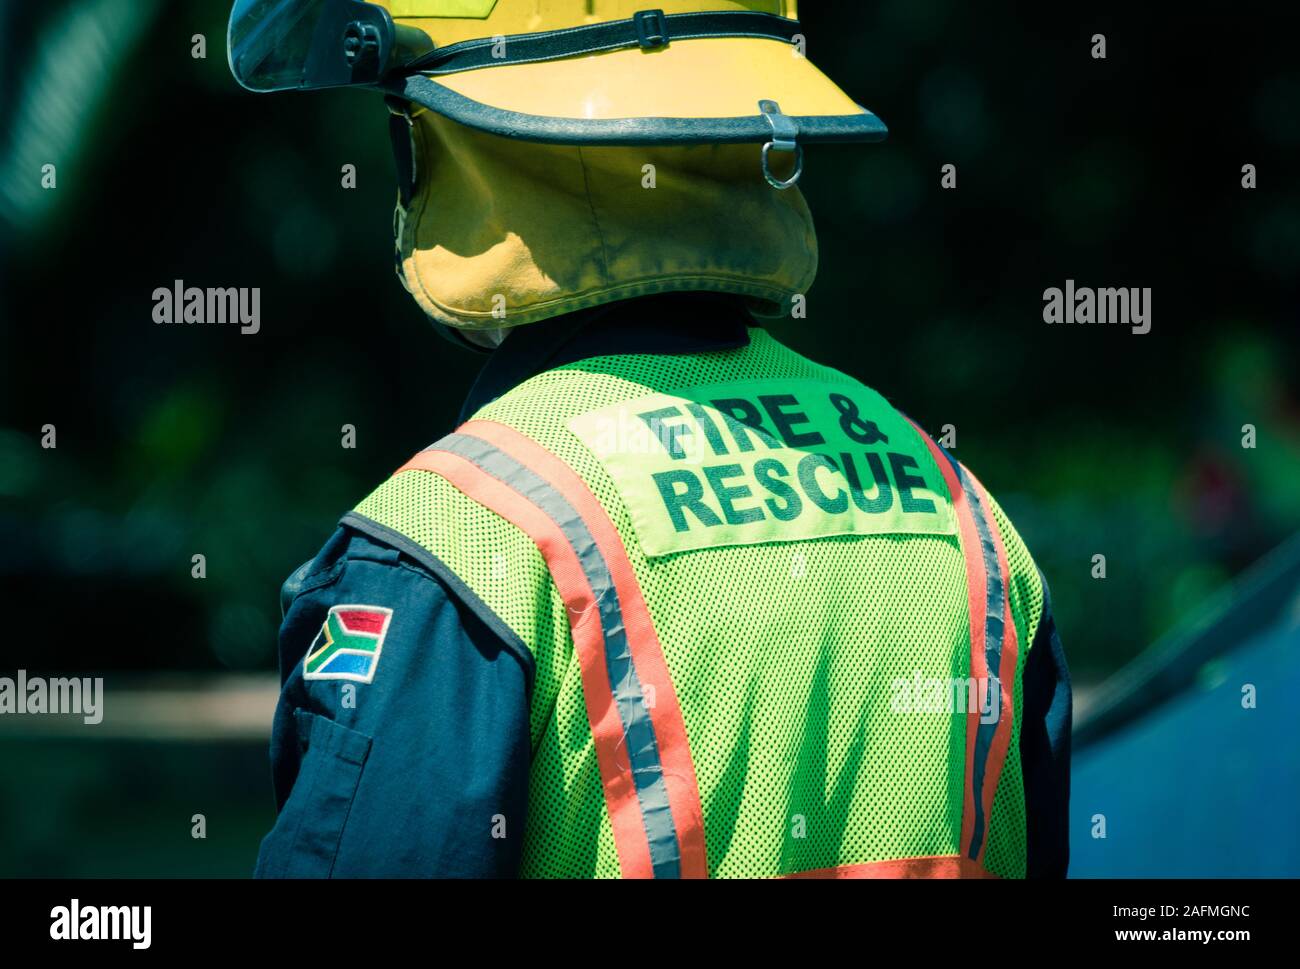 Südafrikanische Feuerwehr und Rettungsdienste Feuerwehr oder Feuerwehrmann tragen Uniform, Helm und Gut sichtbare Kleidung bei einem Verkehrsunfall Szene aufräumen Stockfoto